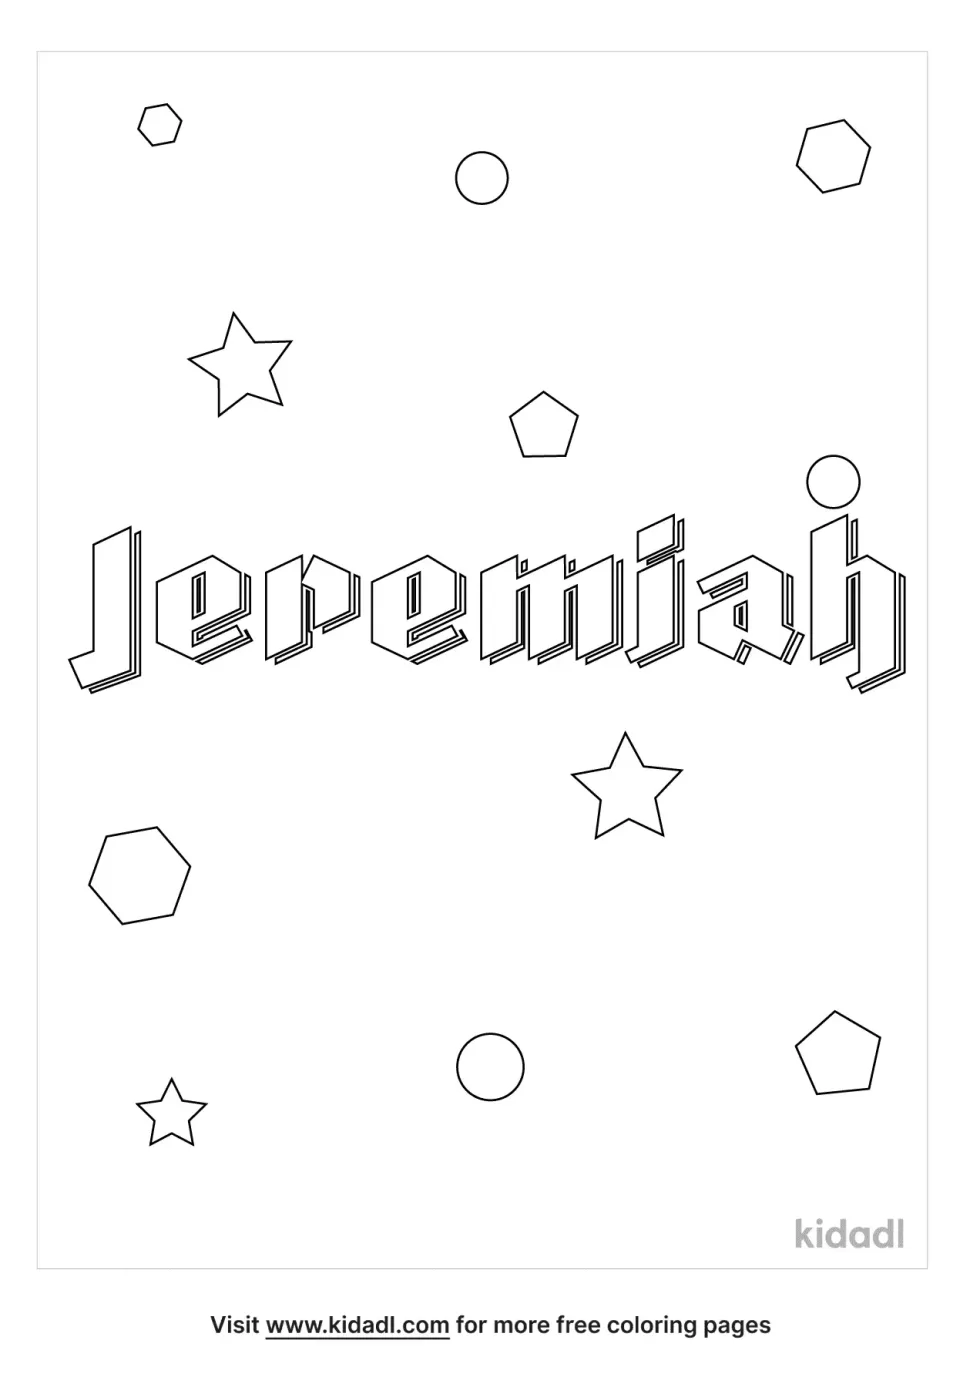 Name Jeremiah